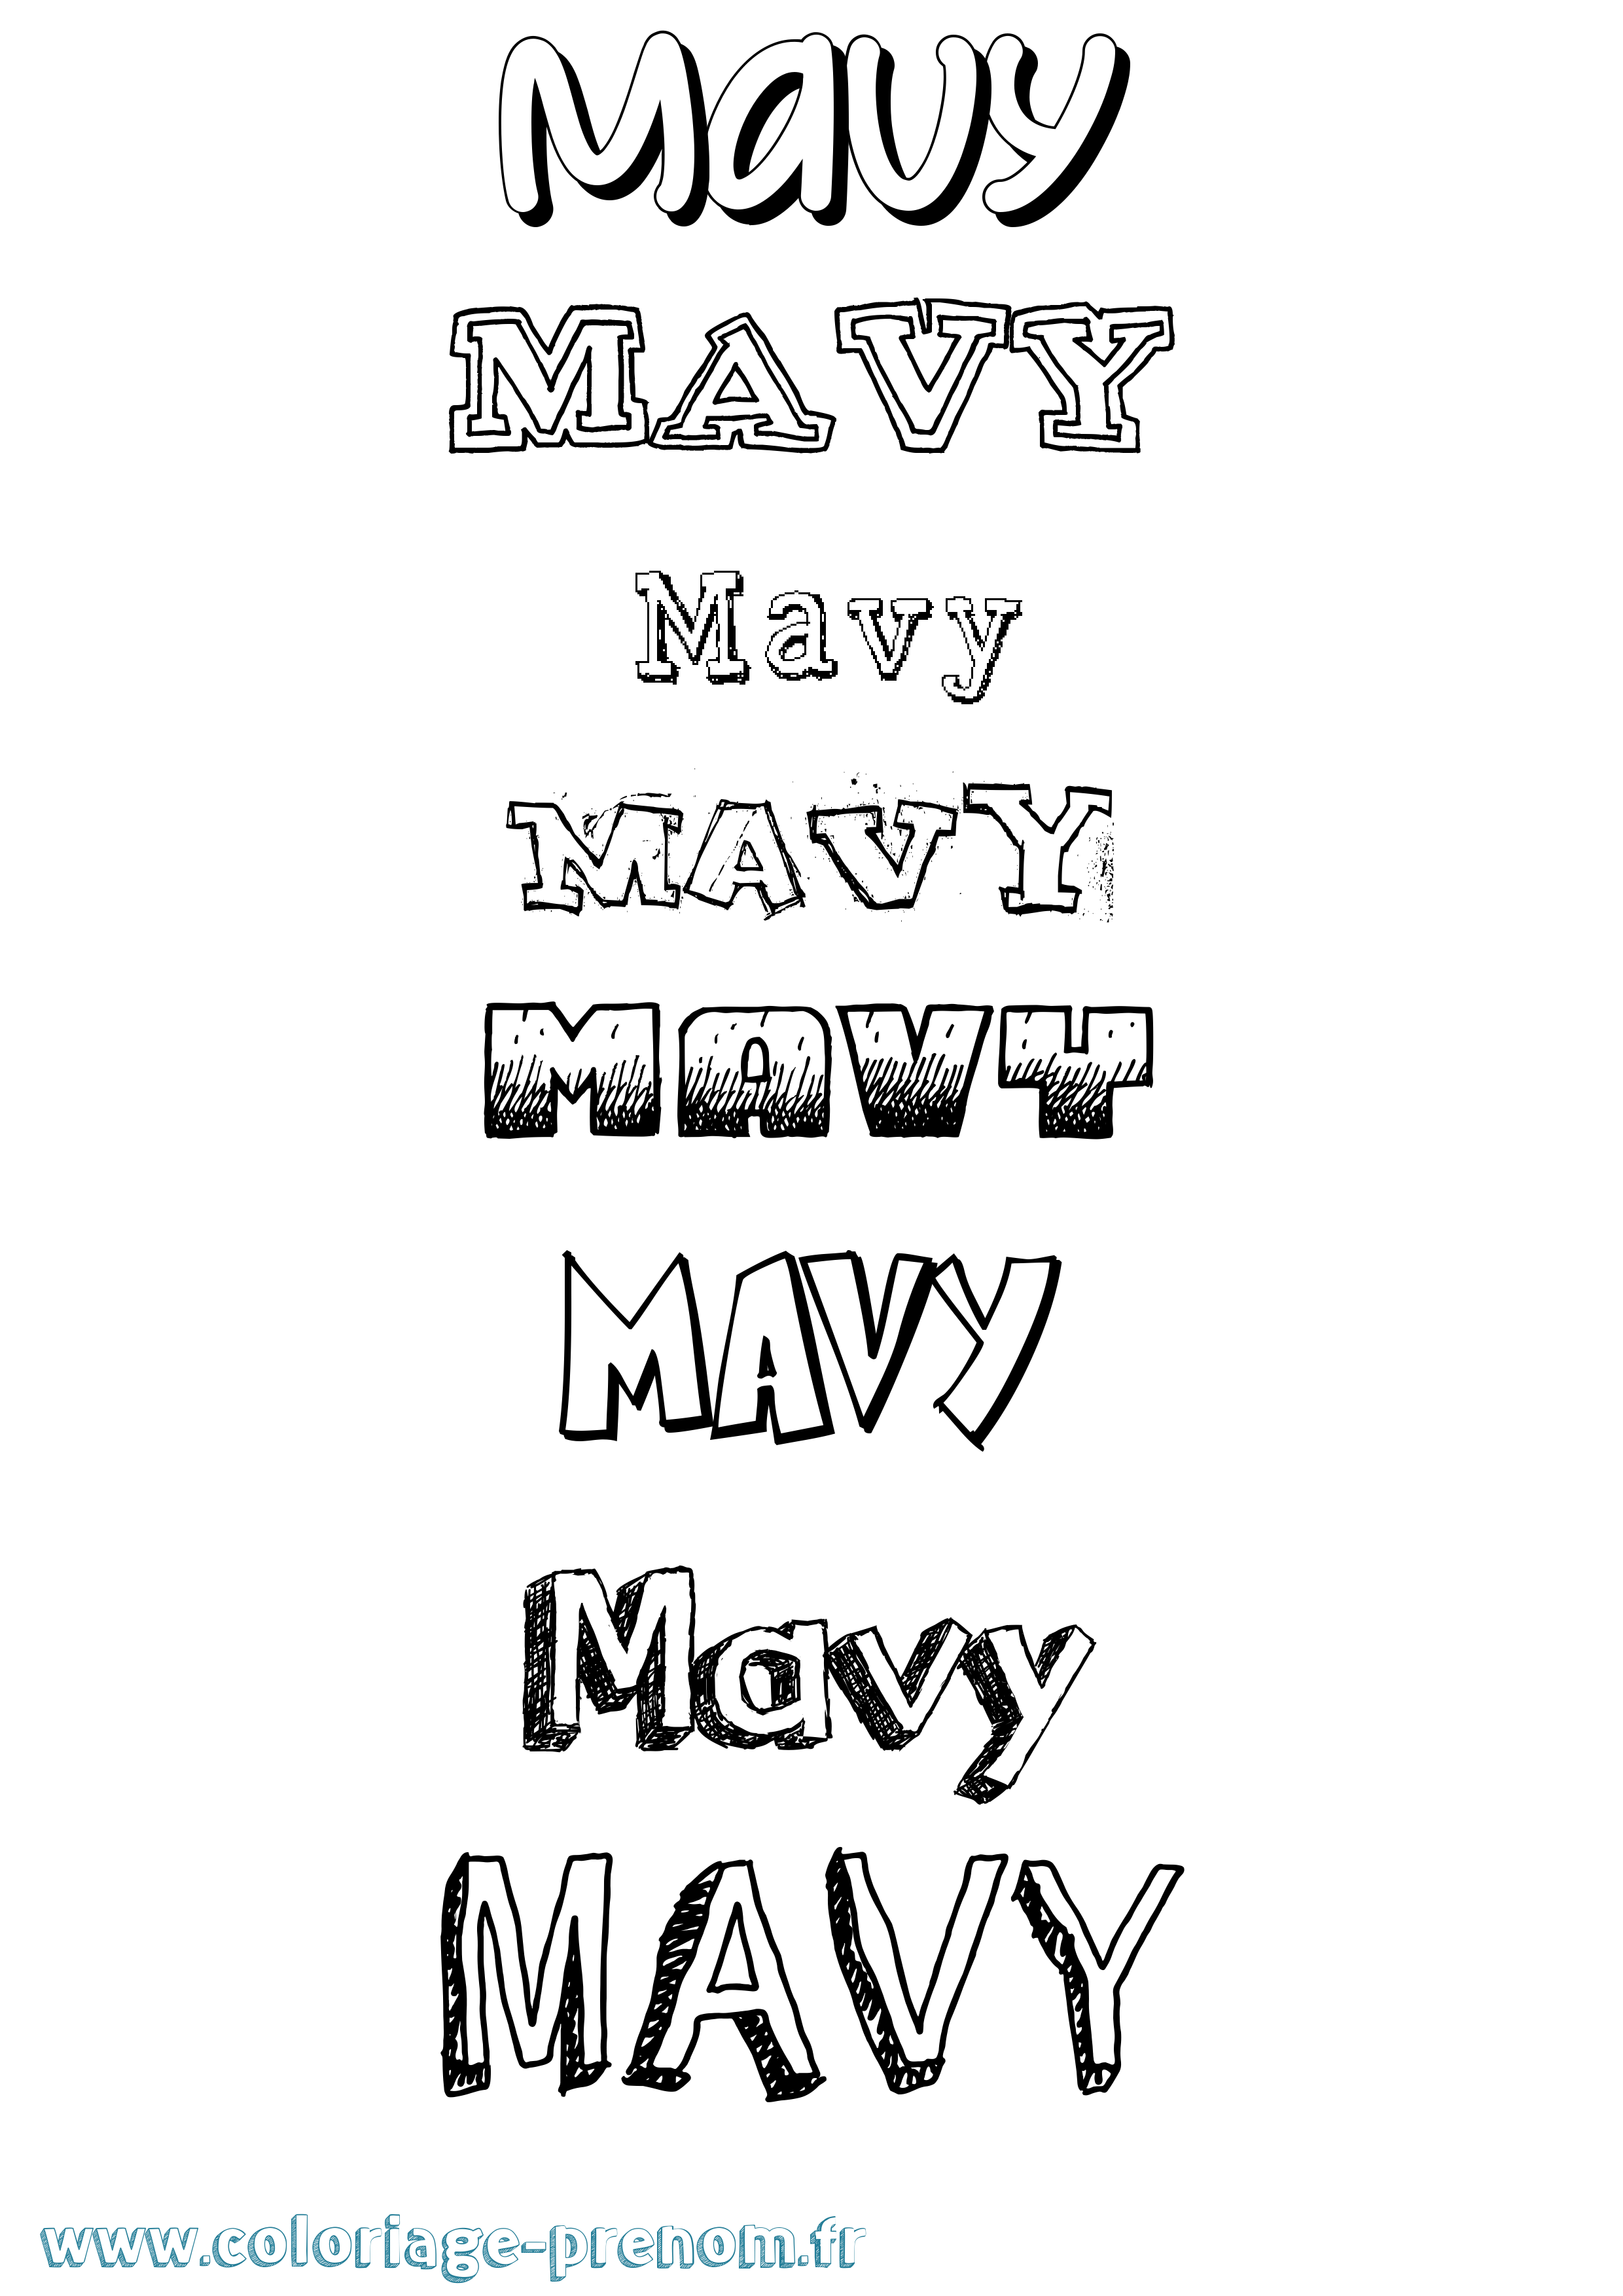 Coloriage prénom Mavy Dessiné